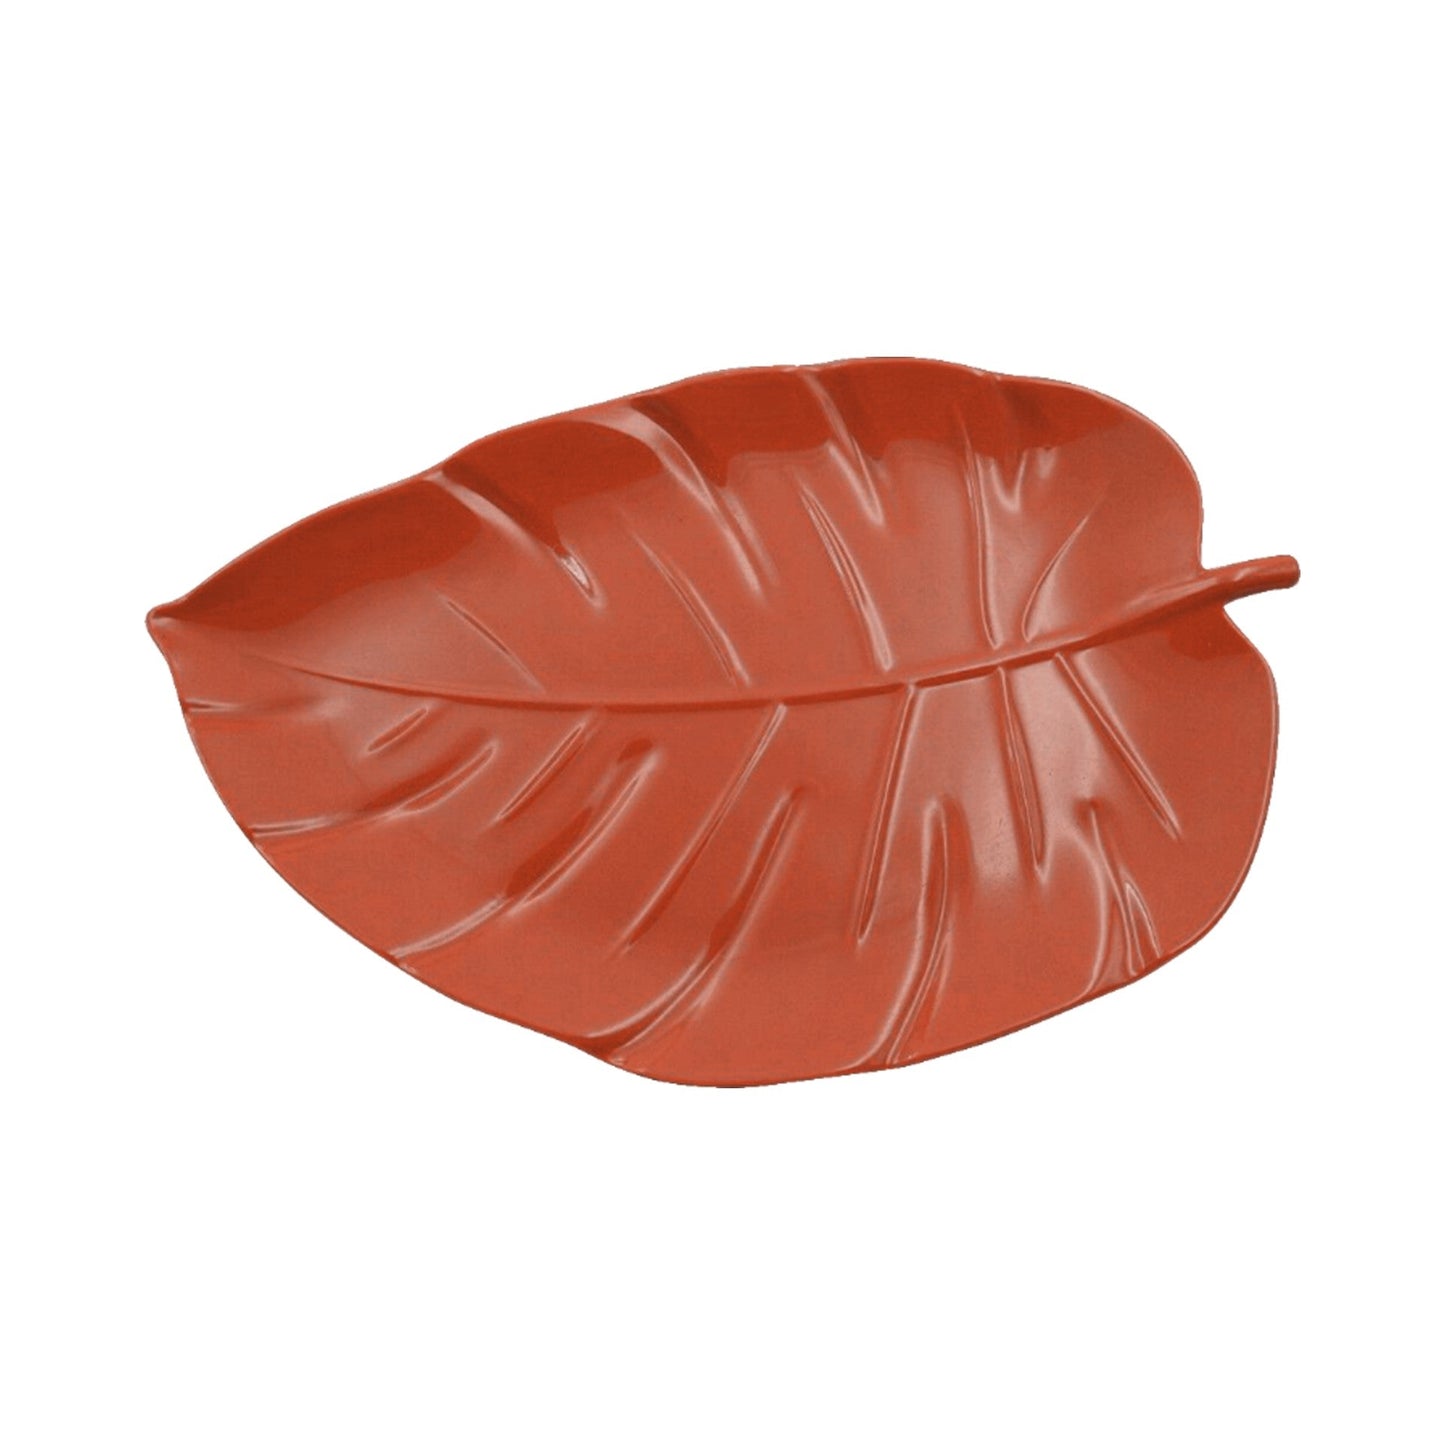 14.8X9.3in Melamine Leaf-Shaped Tray - Gather